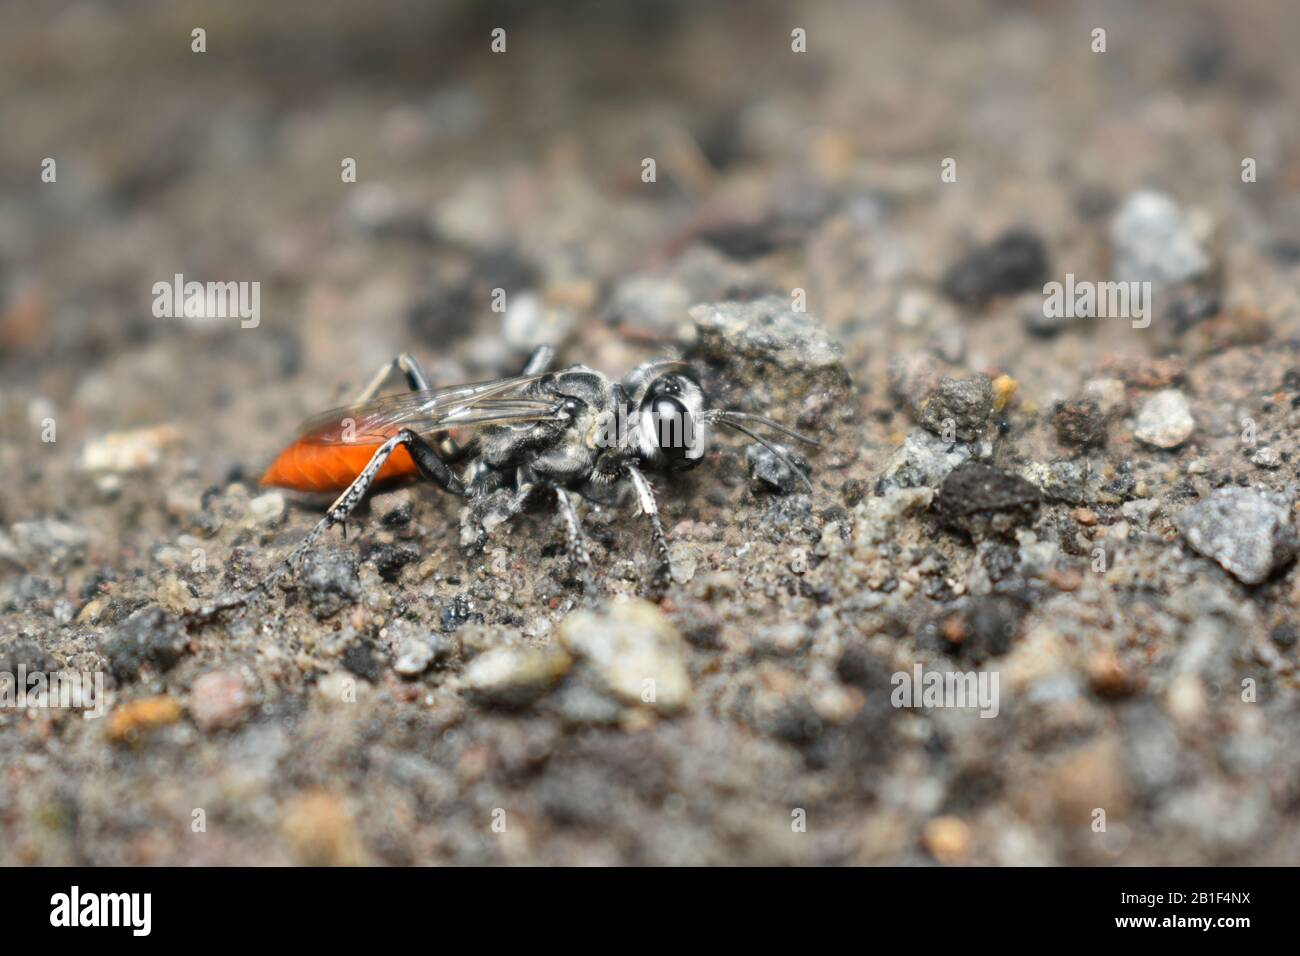 A close up photo of sand wasp (Tribe Psenini) crawling on wet sand during rainy seasons. Surakarta, Indonesia Stock Photo